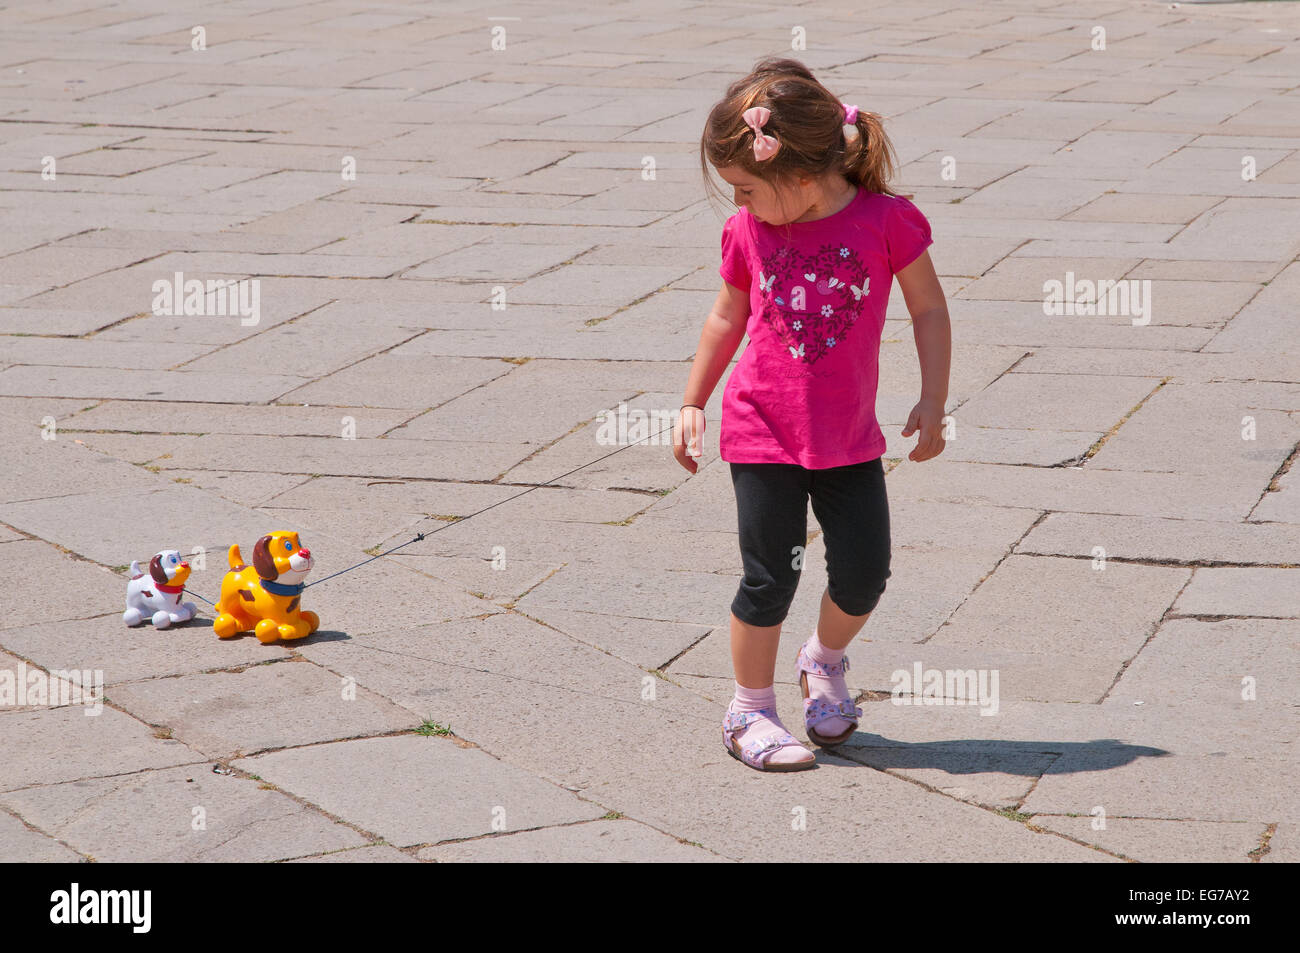 Jeune fille avec tee shirt rose décorée de fleurs et coeur tire deux chiens jouets sur chaîne dans Campo San Stefano Venise Italie Banque D'Images